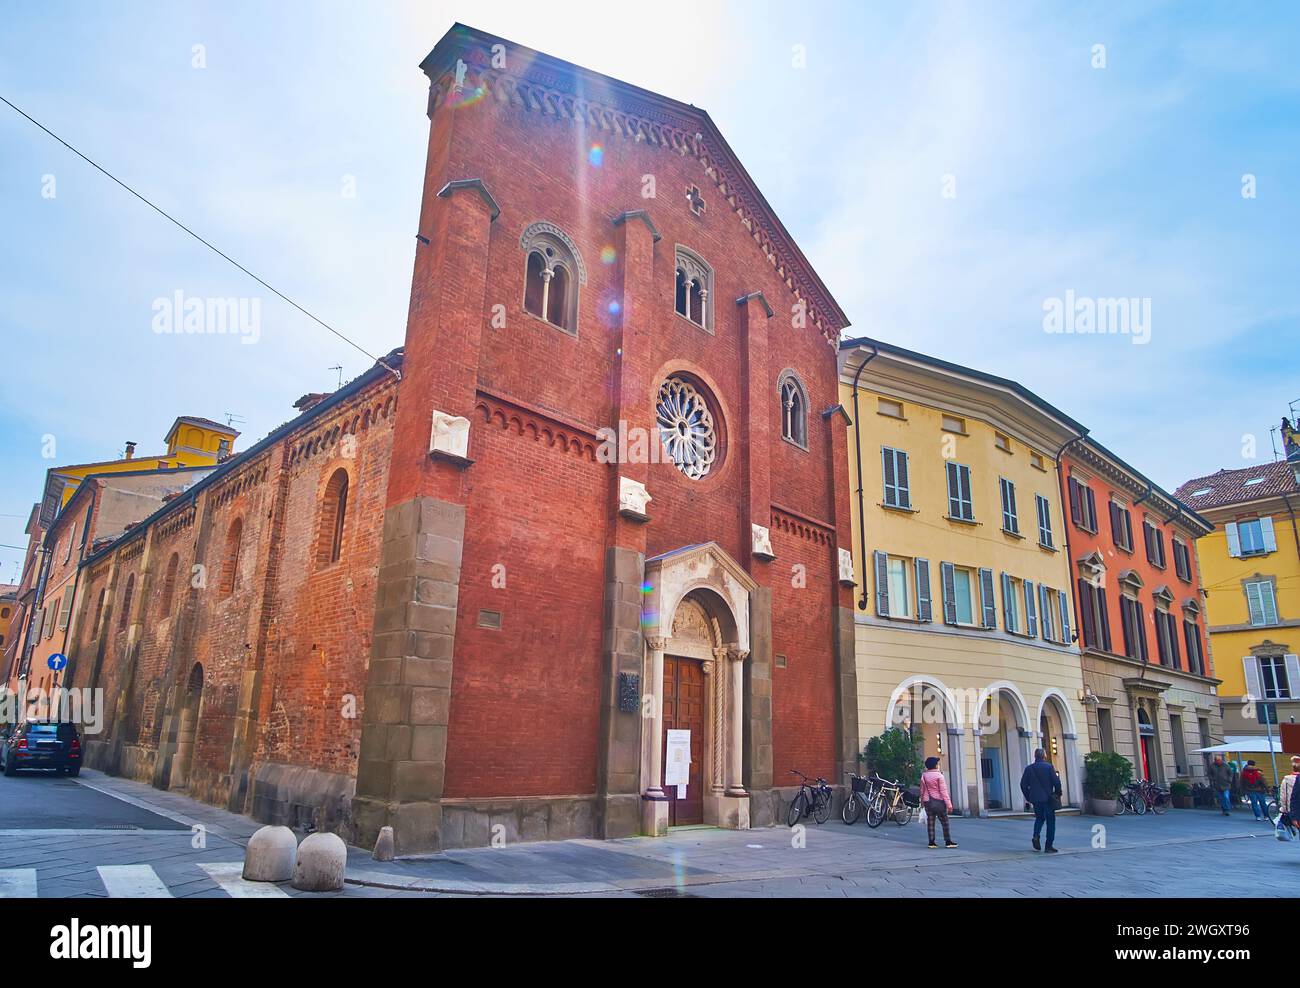 La splendida facciata in mattoni della chiesa medievale di San Donnino, situata in largo Battisti, Piacenza, Italia Foto Stock